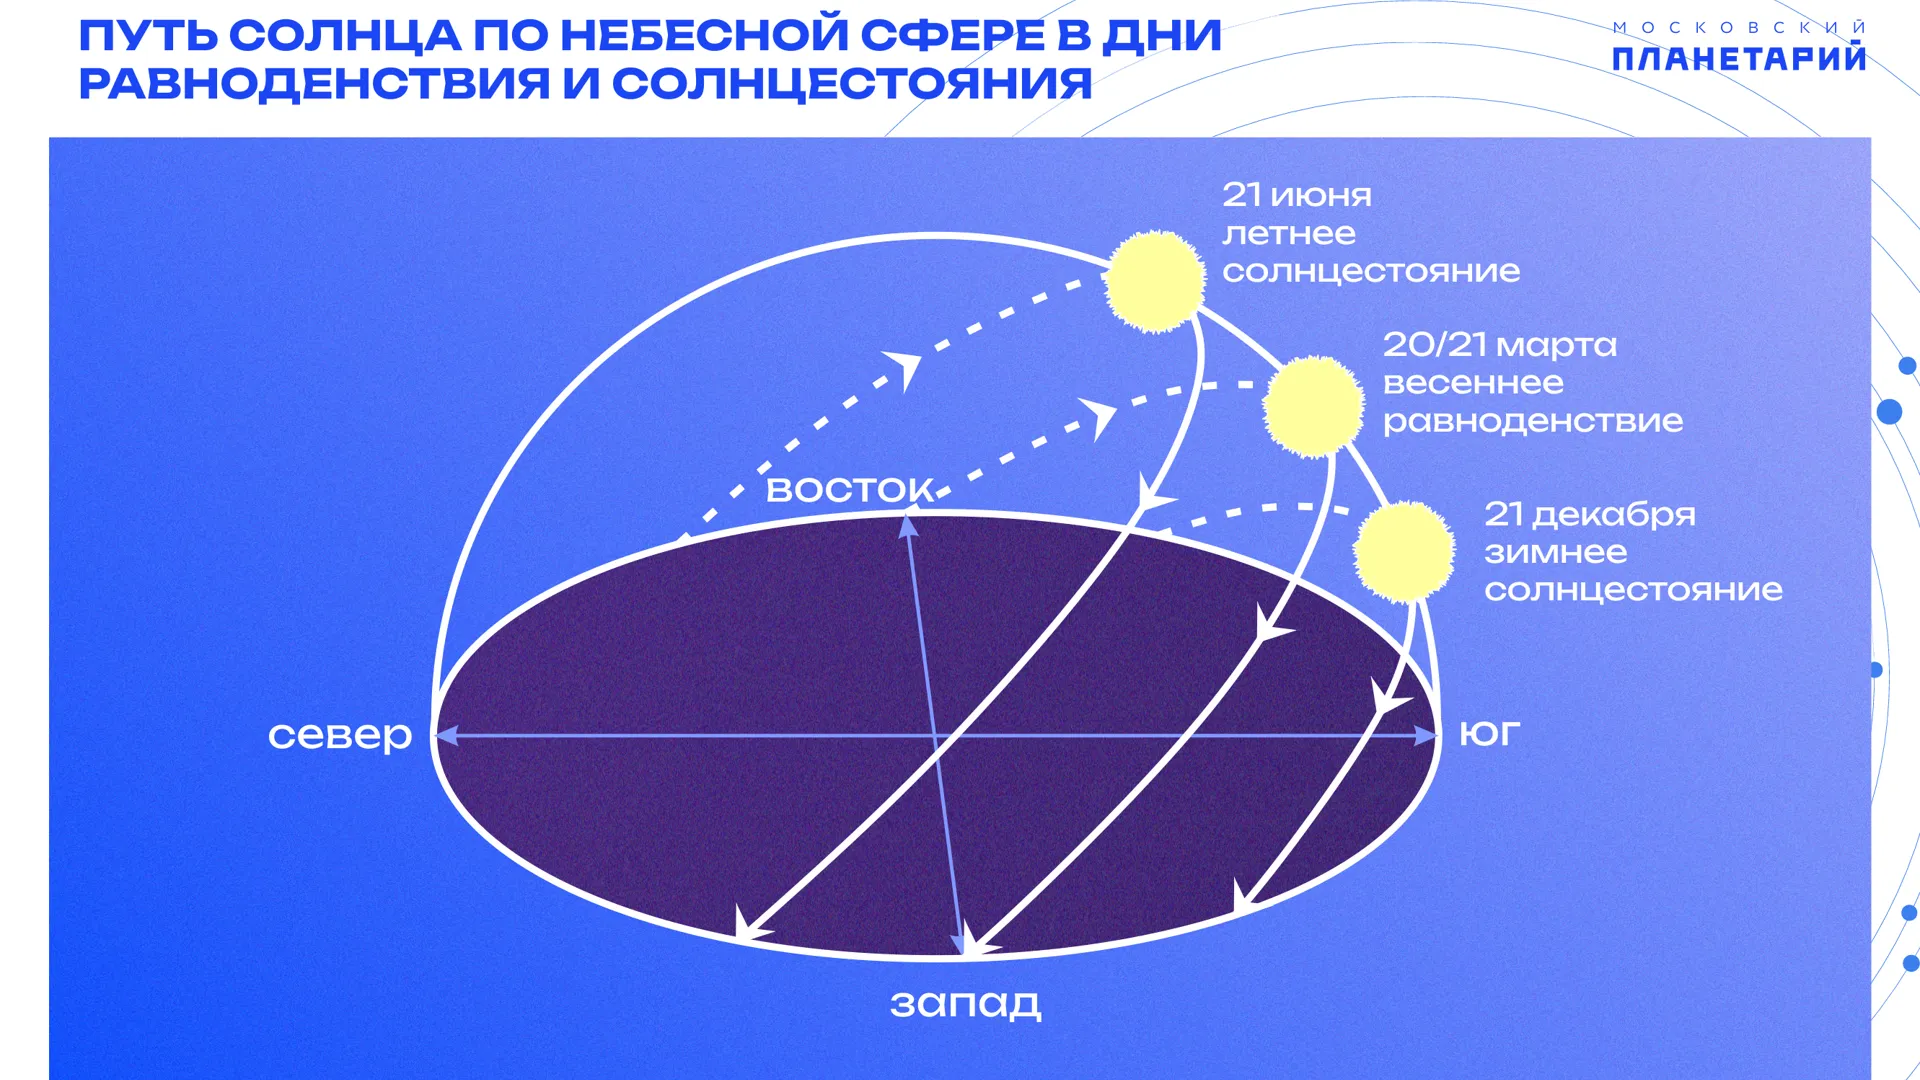 Пресс-служба Московского планетария